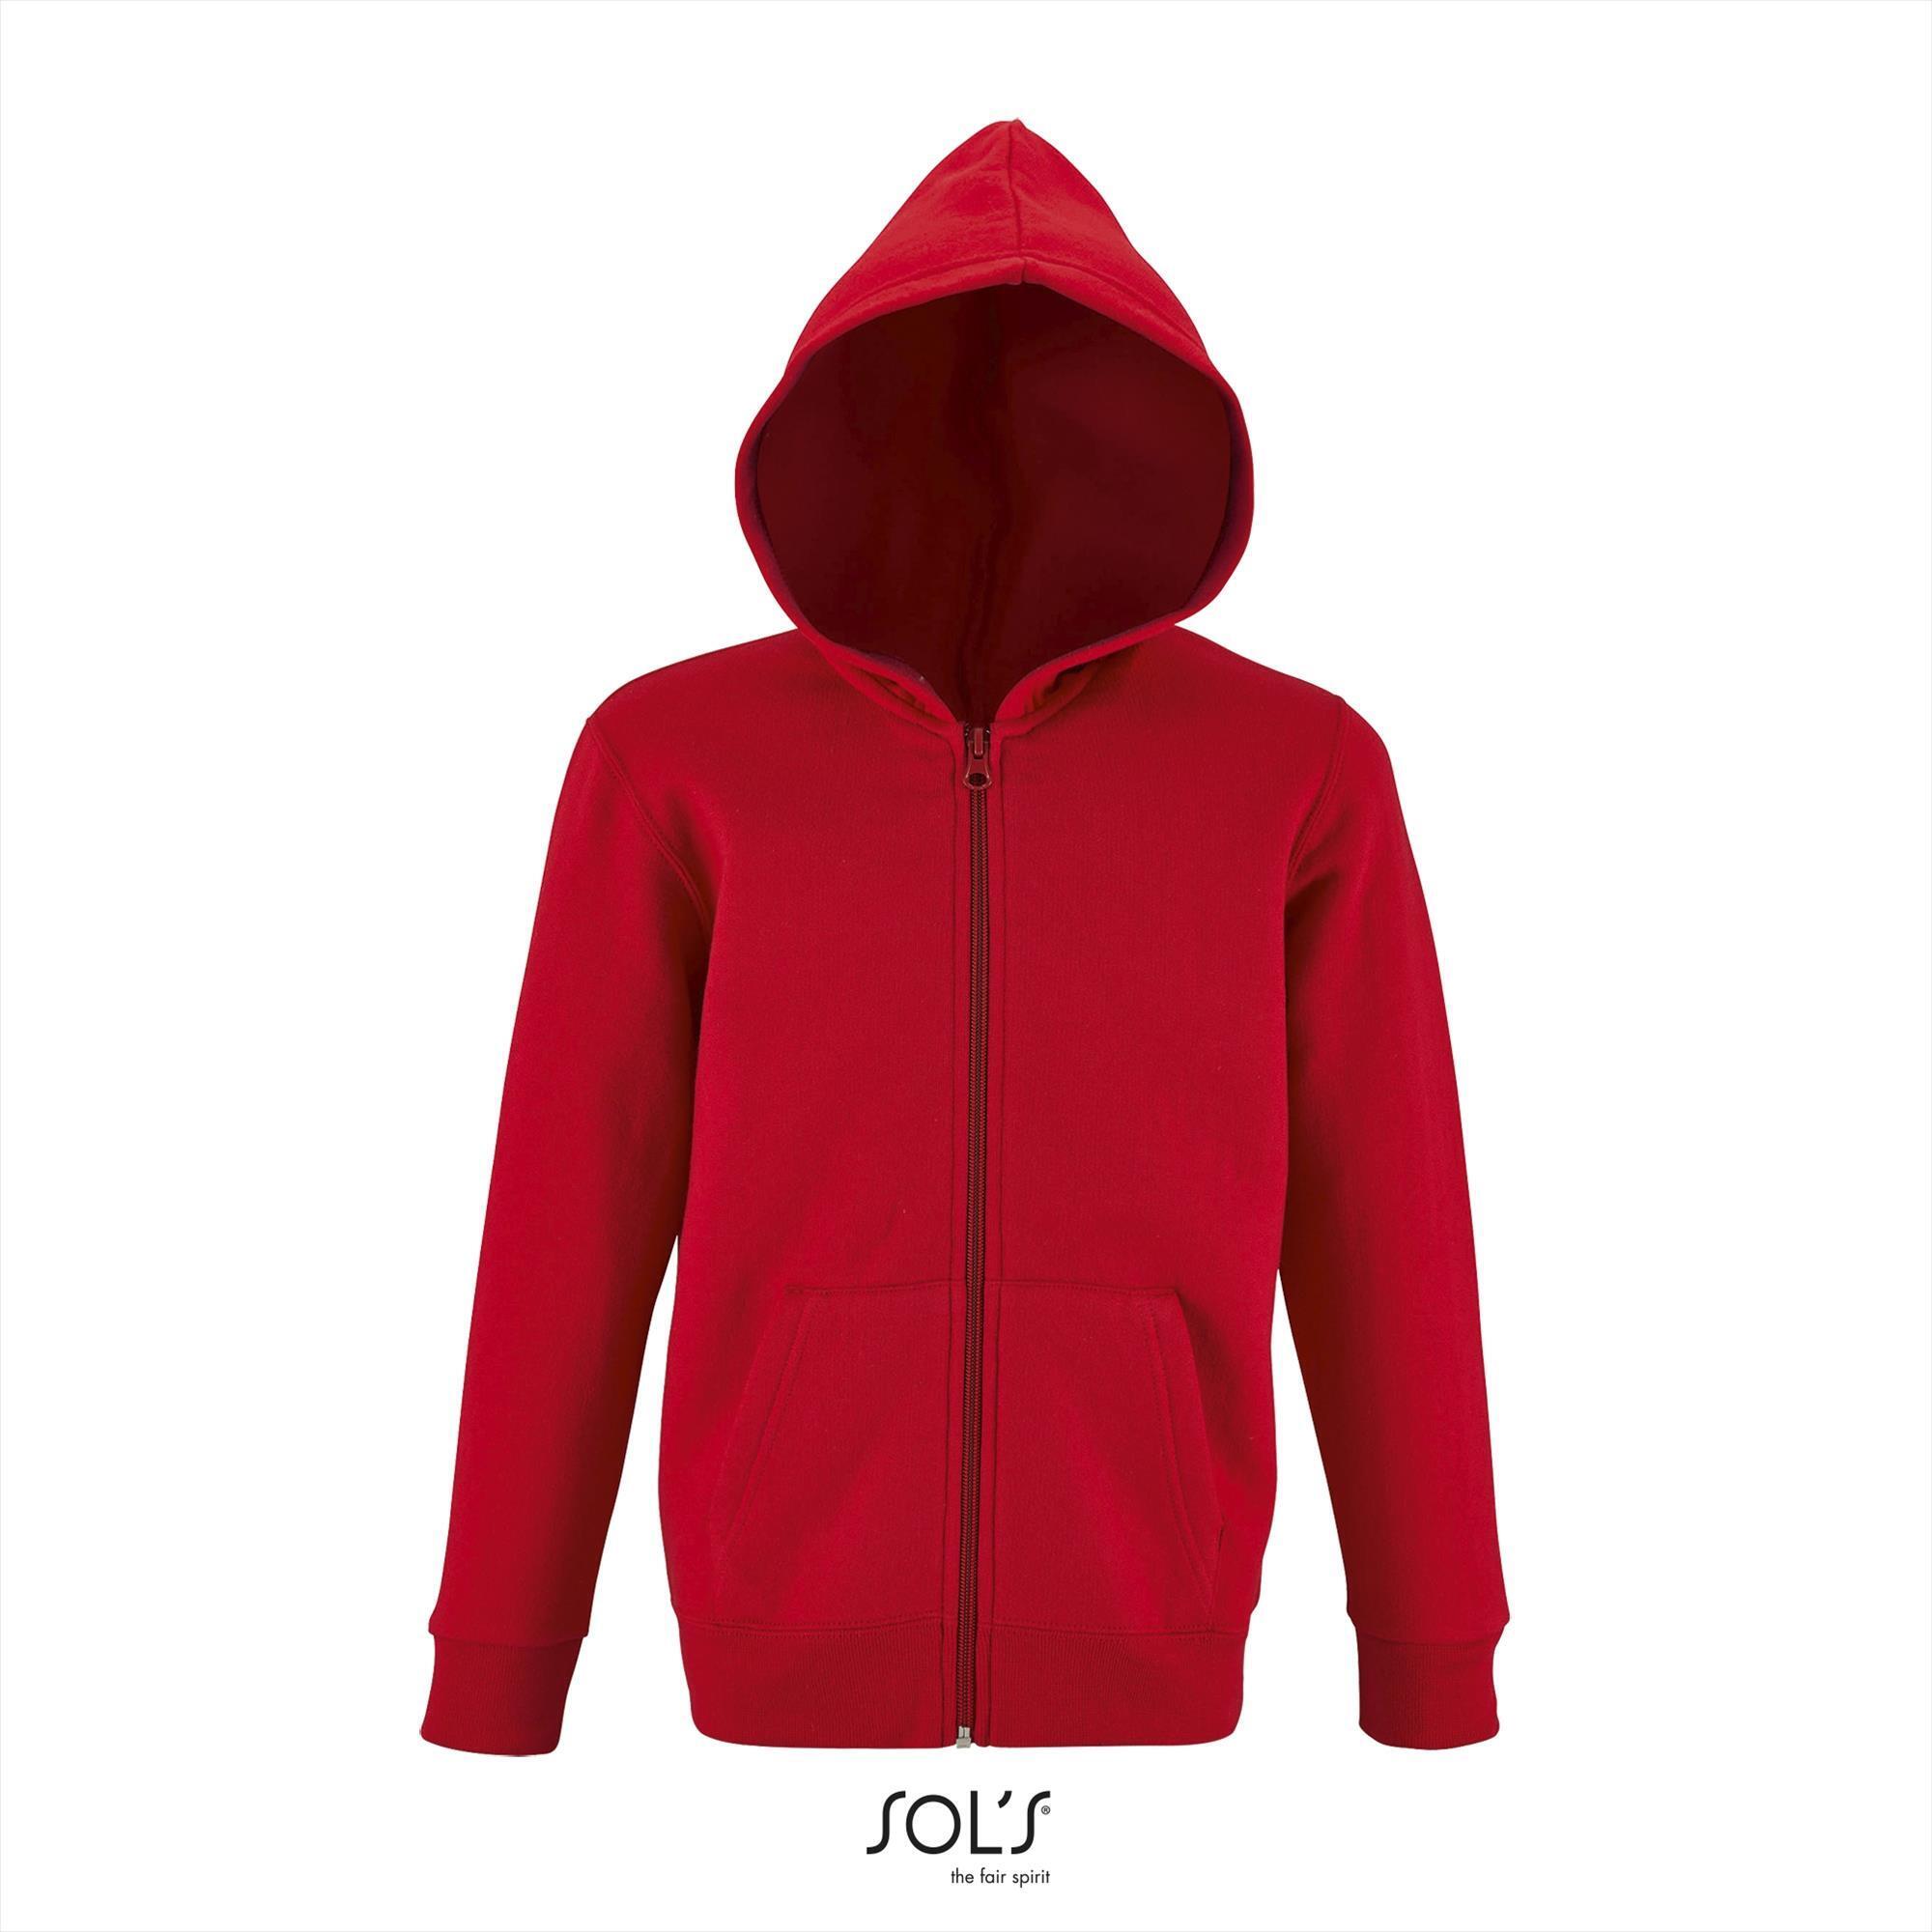 Kinder hooded sweat jacket rood personaliseer te bedrukken